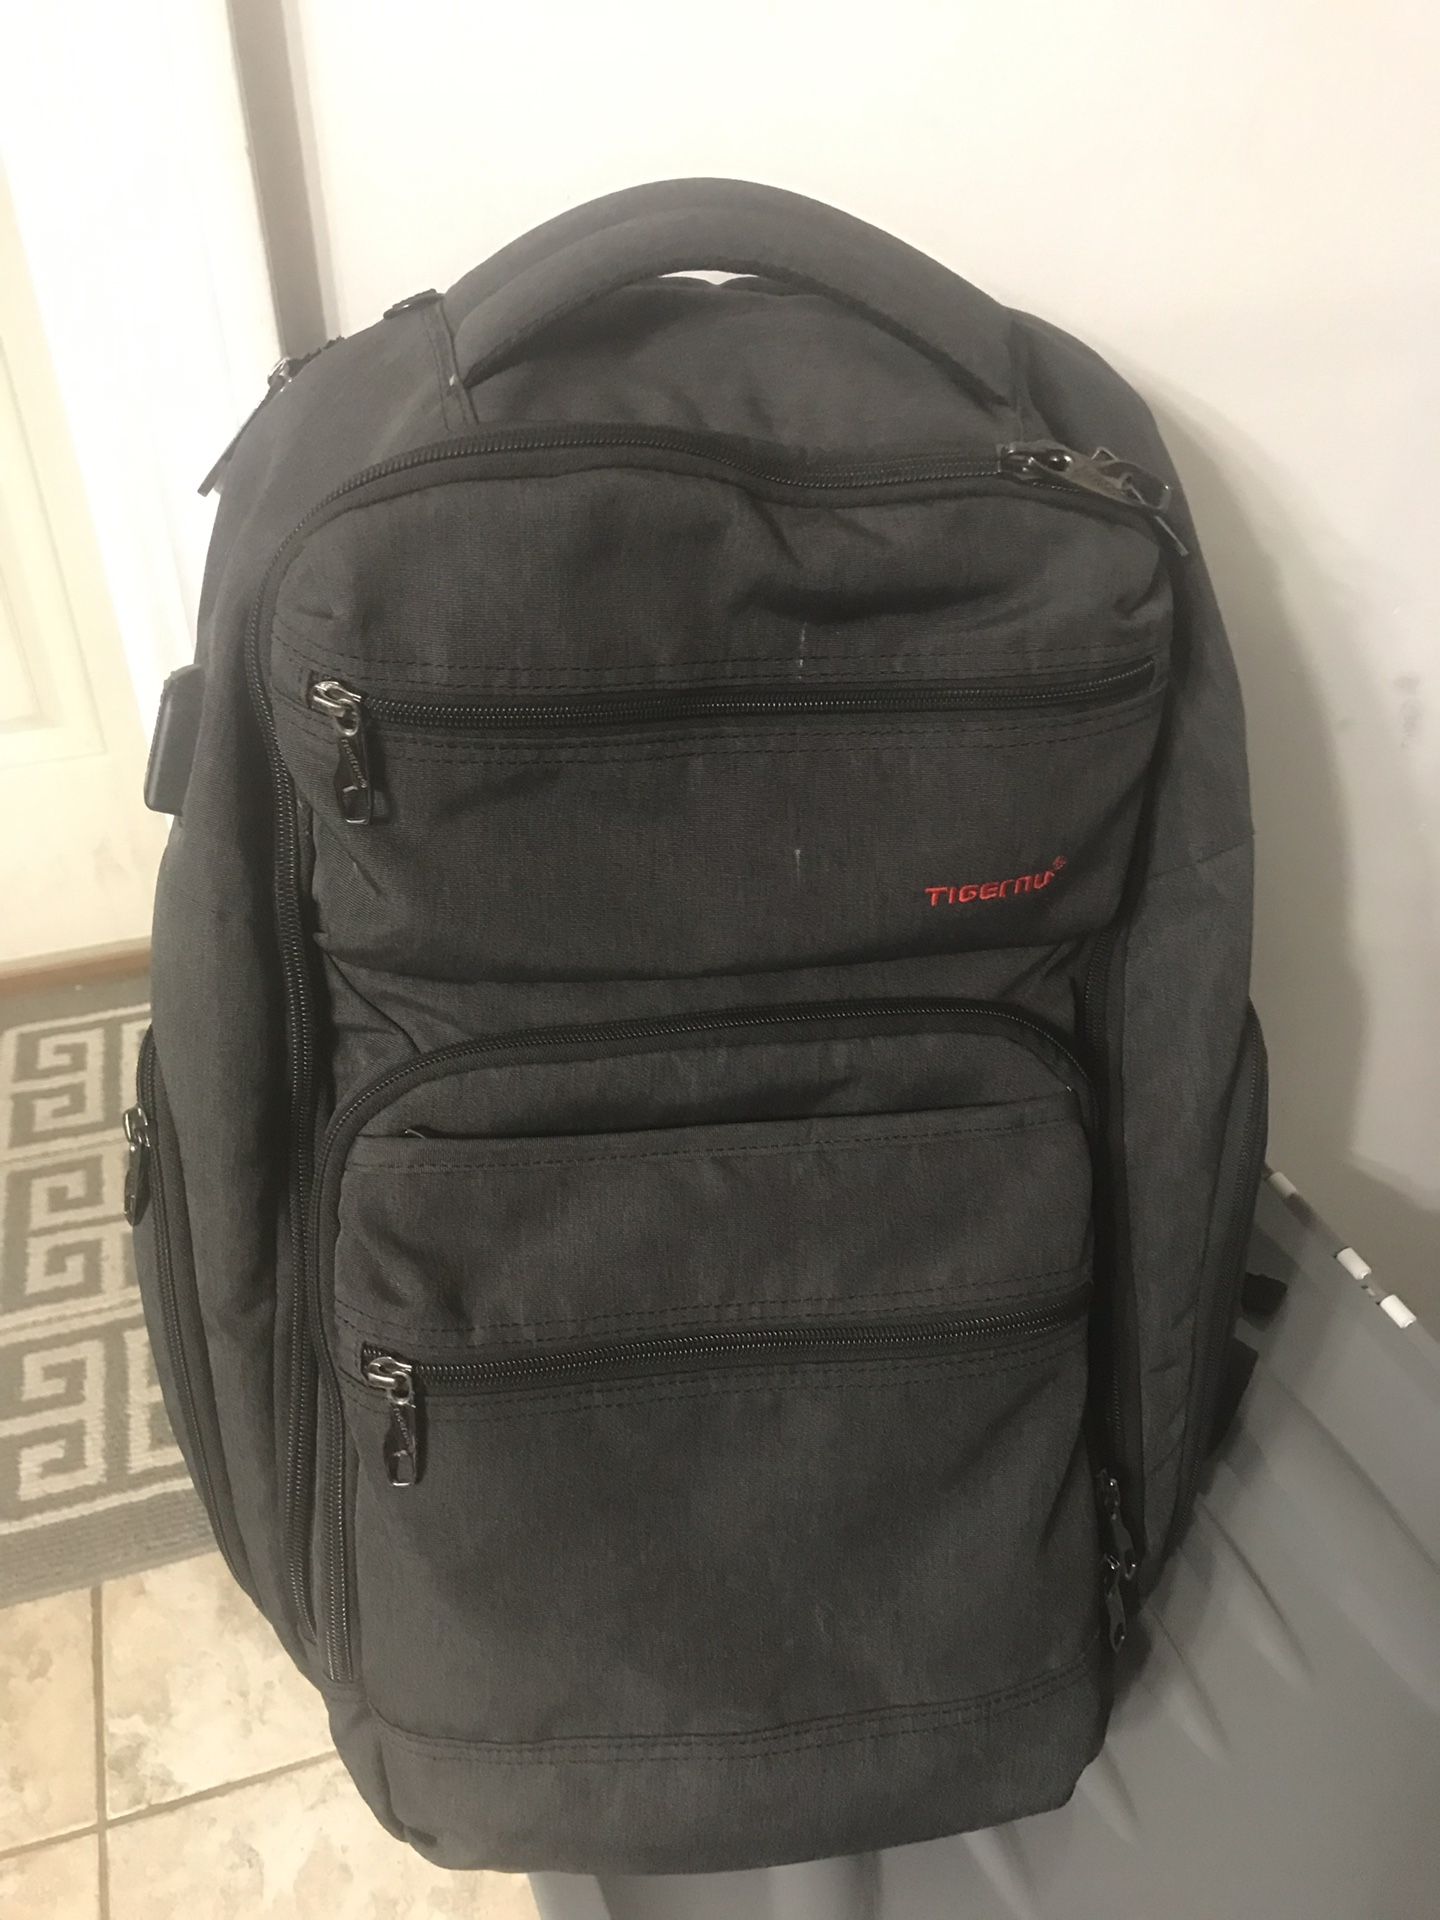 Tigernu laptop backpack